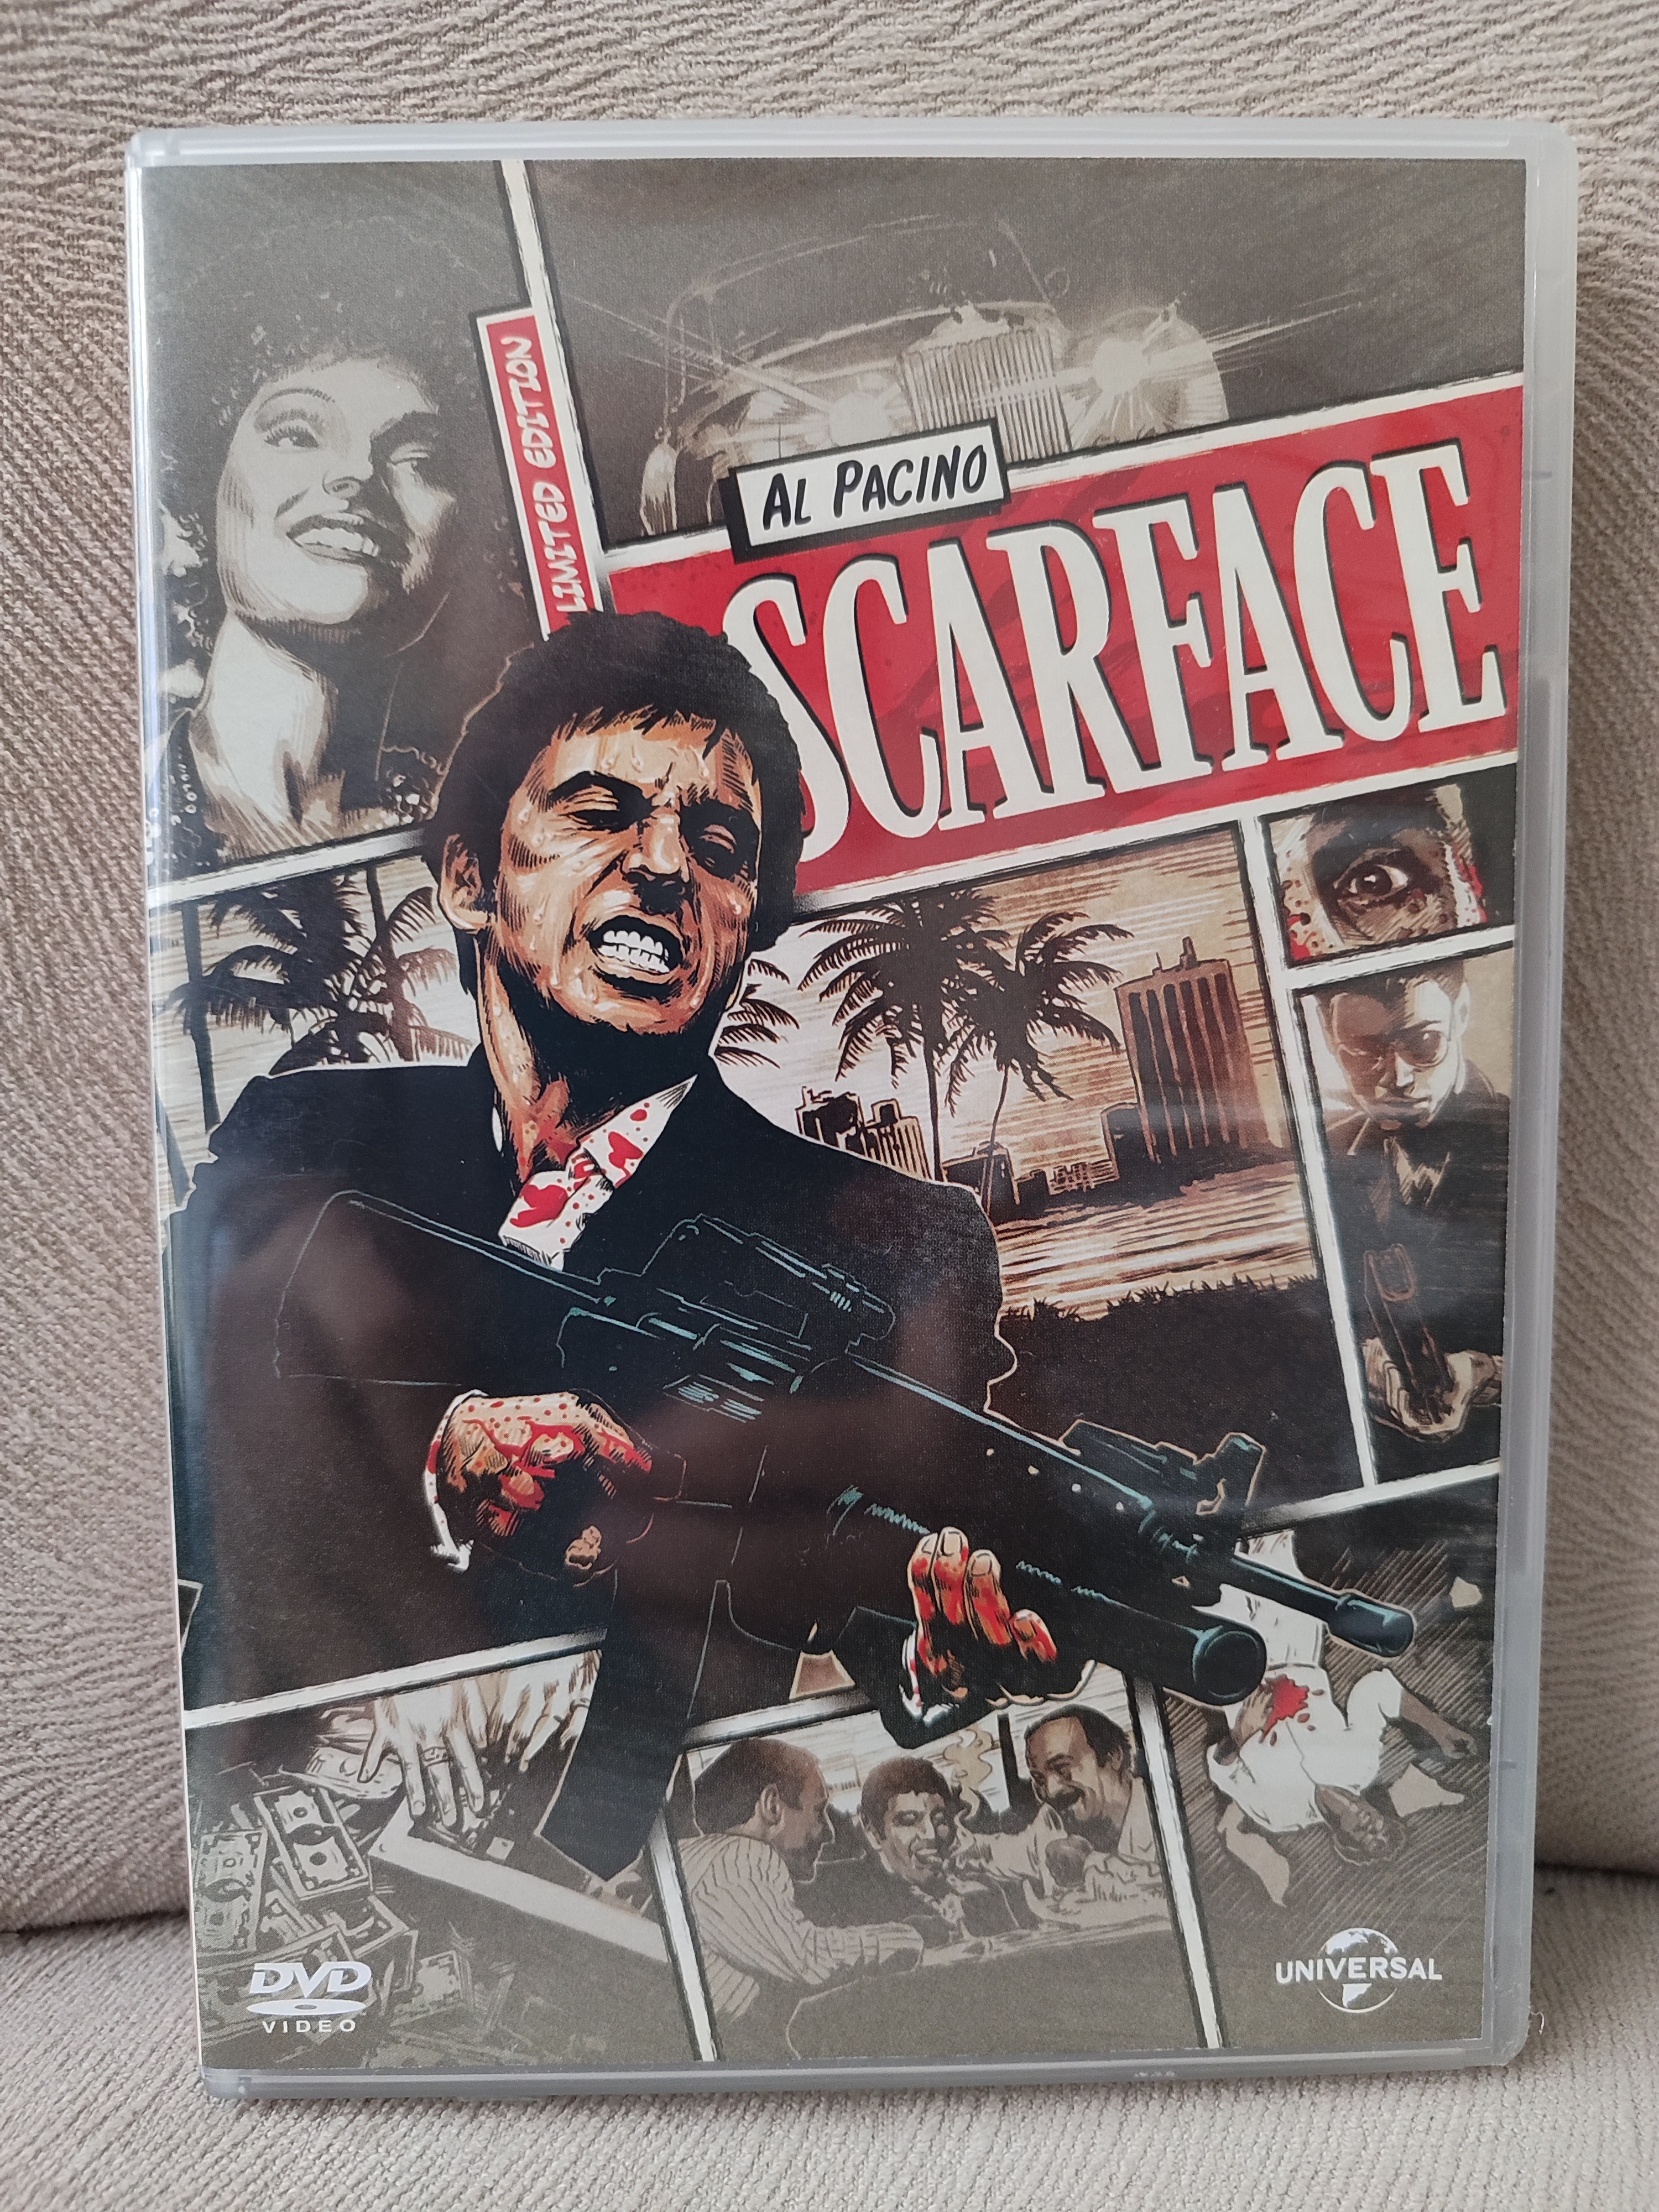 SCARFACE - Al Pacino - Limited Edition  - DVD Film 2. EL